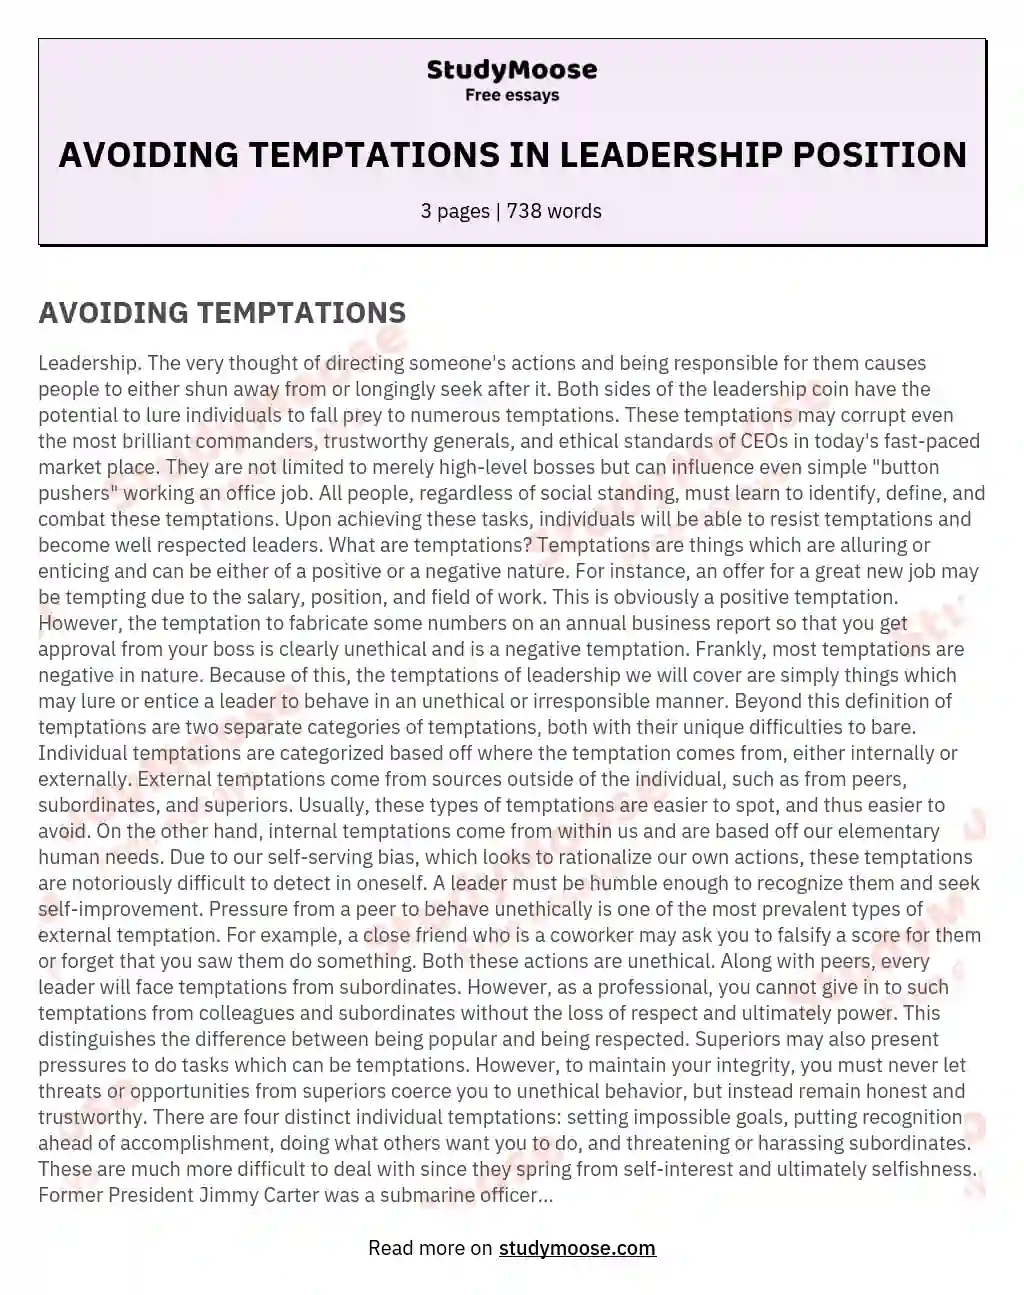 AVOIDING TEMPTATIONS IN LEADERSHIP POSITION essay